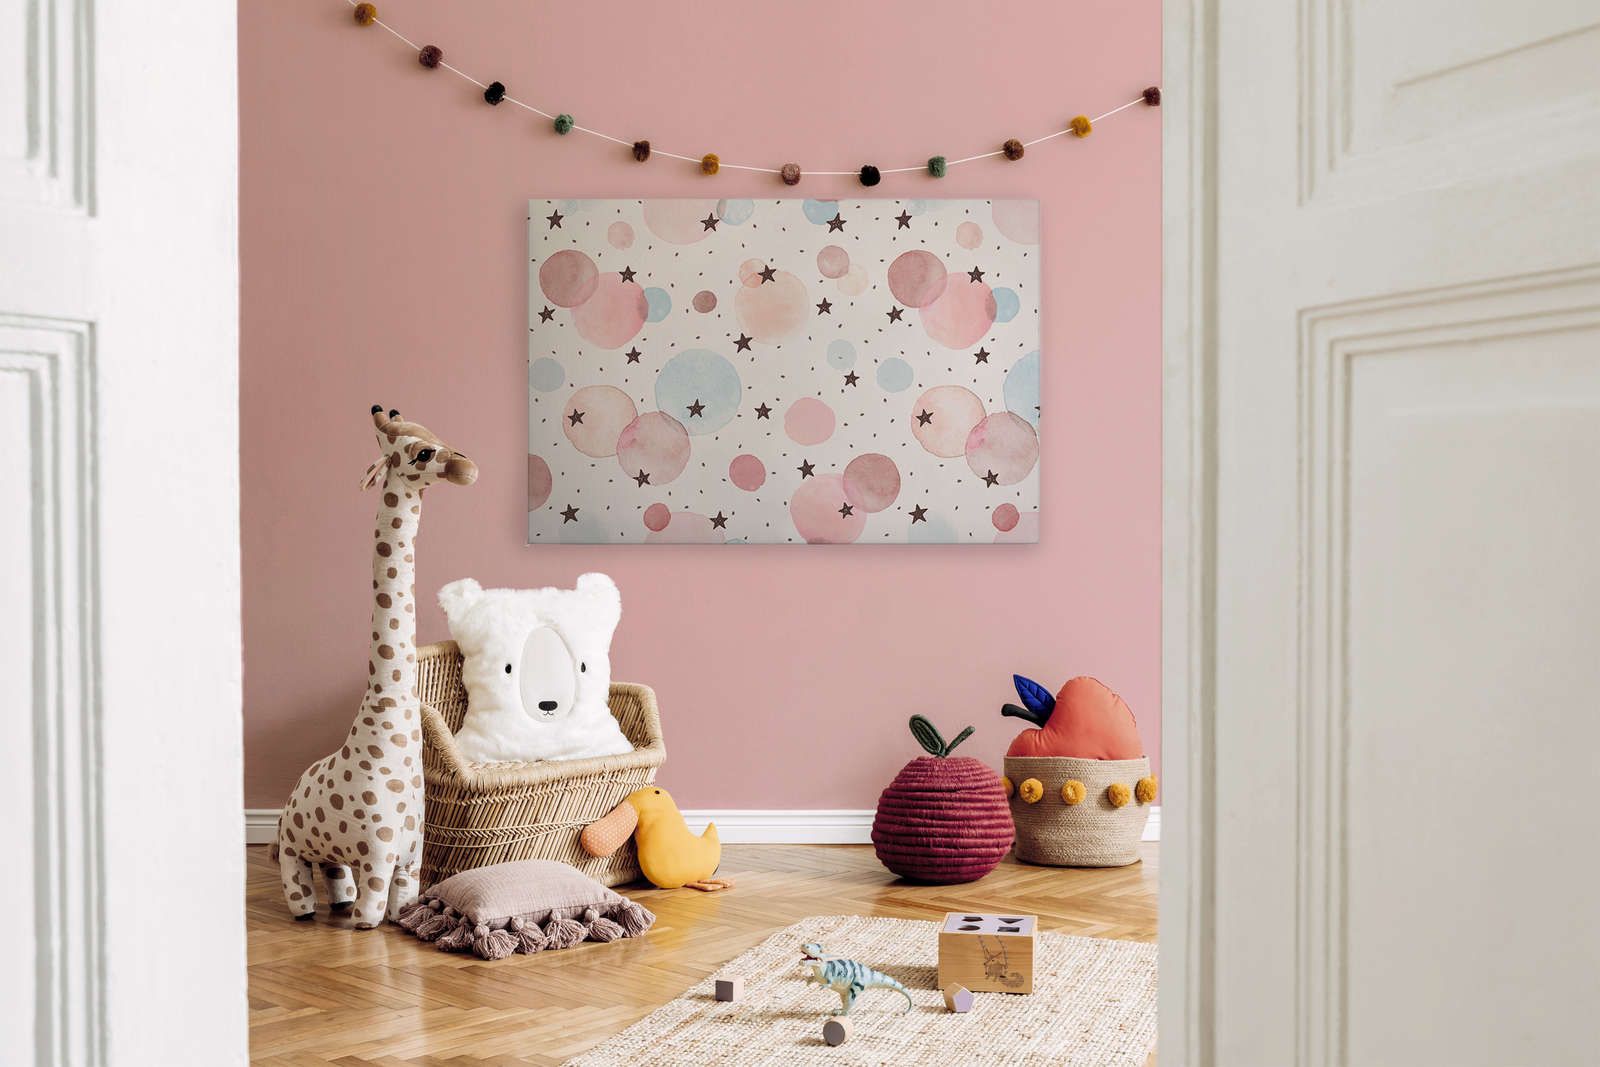             Canvas voor kinderkamer met sterren, stippen en cirkels - 120 cm x 80 cm
        